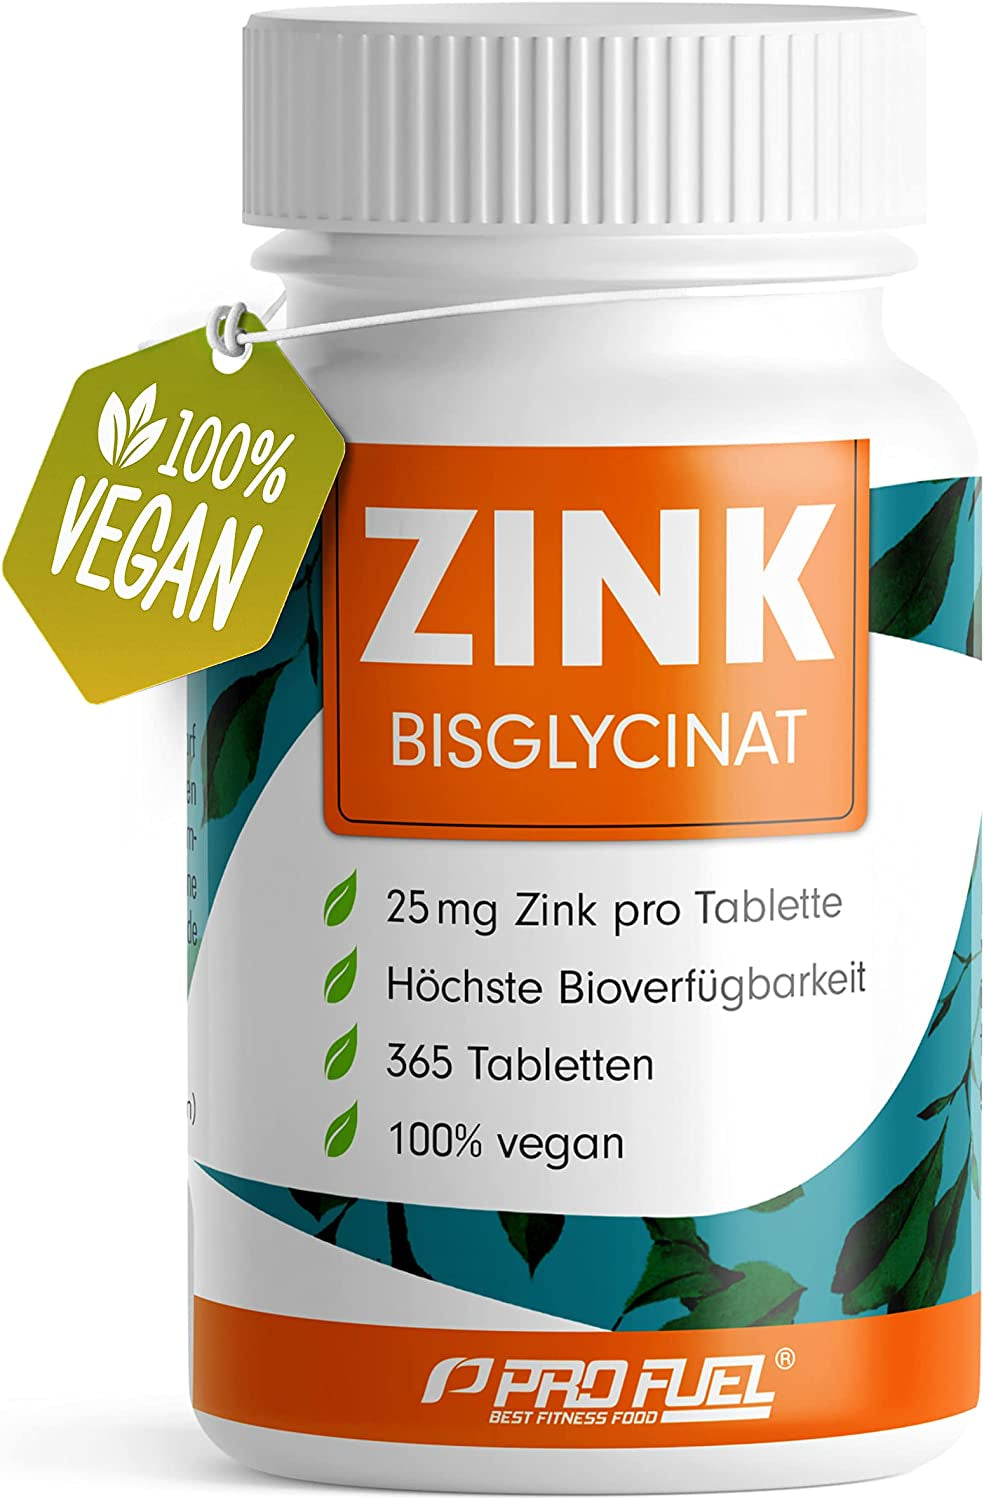 Zink 25Mg - 365 Tabletten (Vegan) Mit Zink-Bisglycinat (Zink-Chelat) Für Höchste Bioverfügbarkeit - Laborgeprüft, Hochdosiert, Ohne Unerwünschten Zusatzstoffe - 1 Jahresvorrat - Profuel